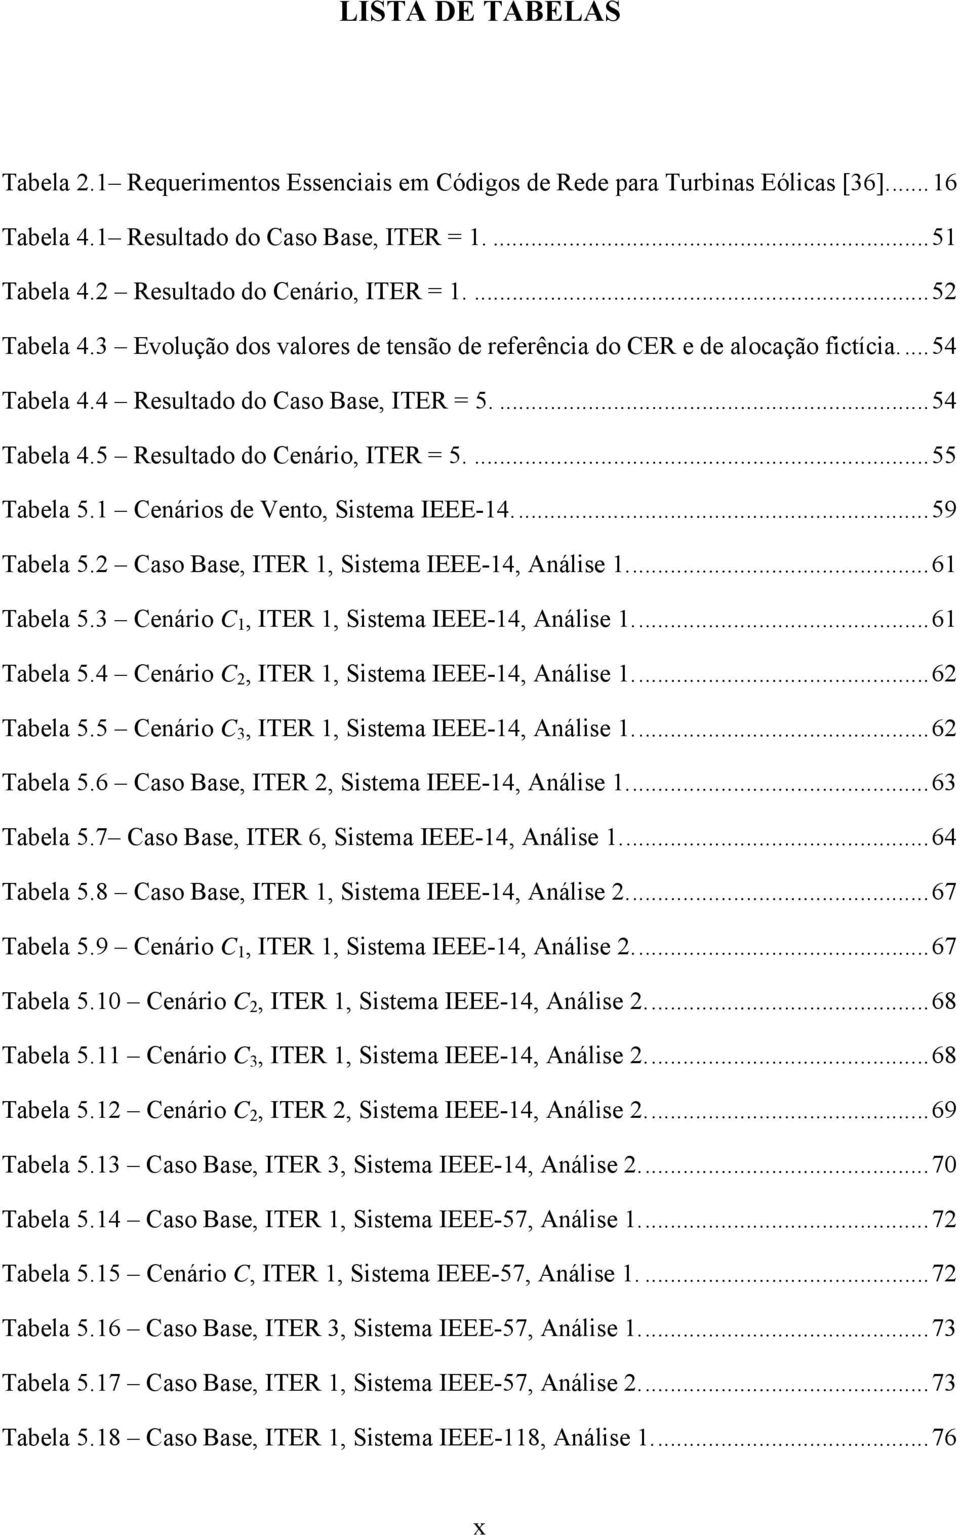 ... 55 Tabela 5.1 Cenários de Vento, Sistema IEEE-14.... 59 Tabela 5.2 Caso Base, ITER 1, Sistema IEEE-14, Análise 1.... 61 Tabela 5.3 Cenário C 1, ITER 1, Sistema IEEE-14, Análise 1.... 61 Tabela 5.4 Cenário C 2, ITER 1, Sistema IEEE-14, Análise 1.